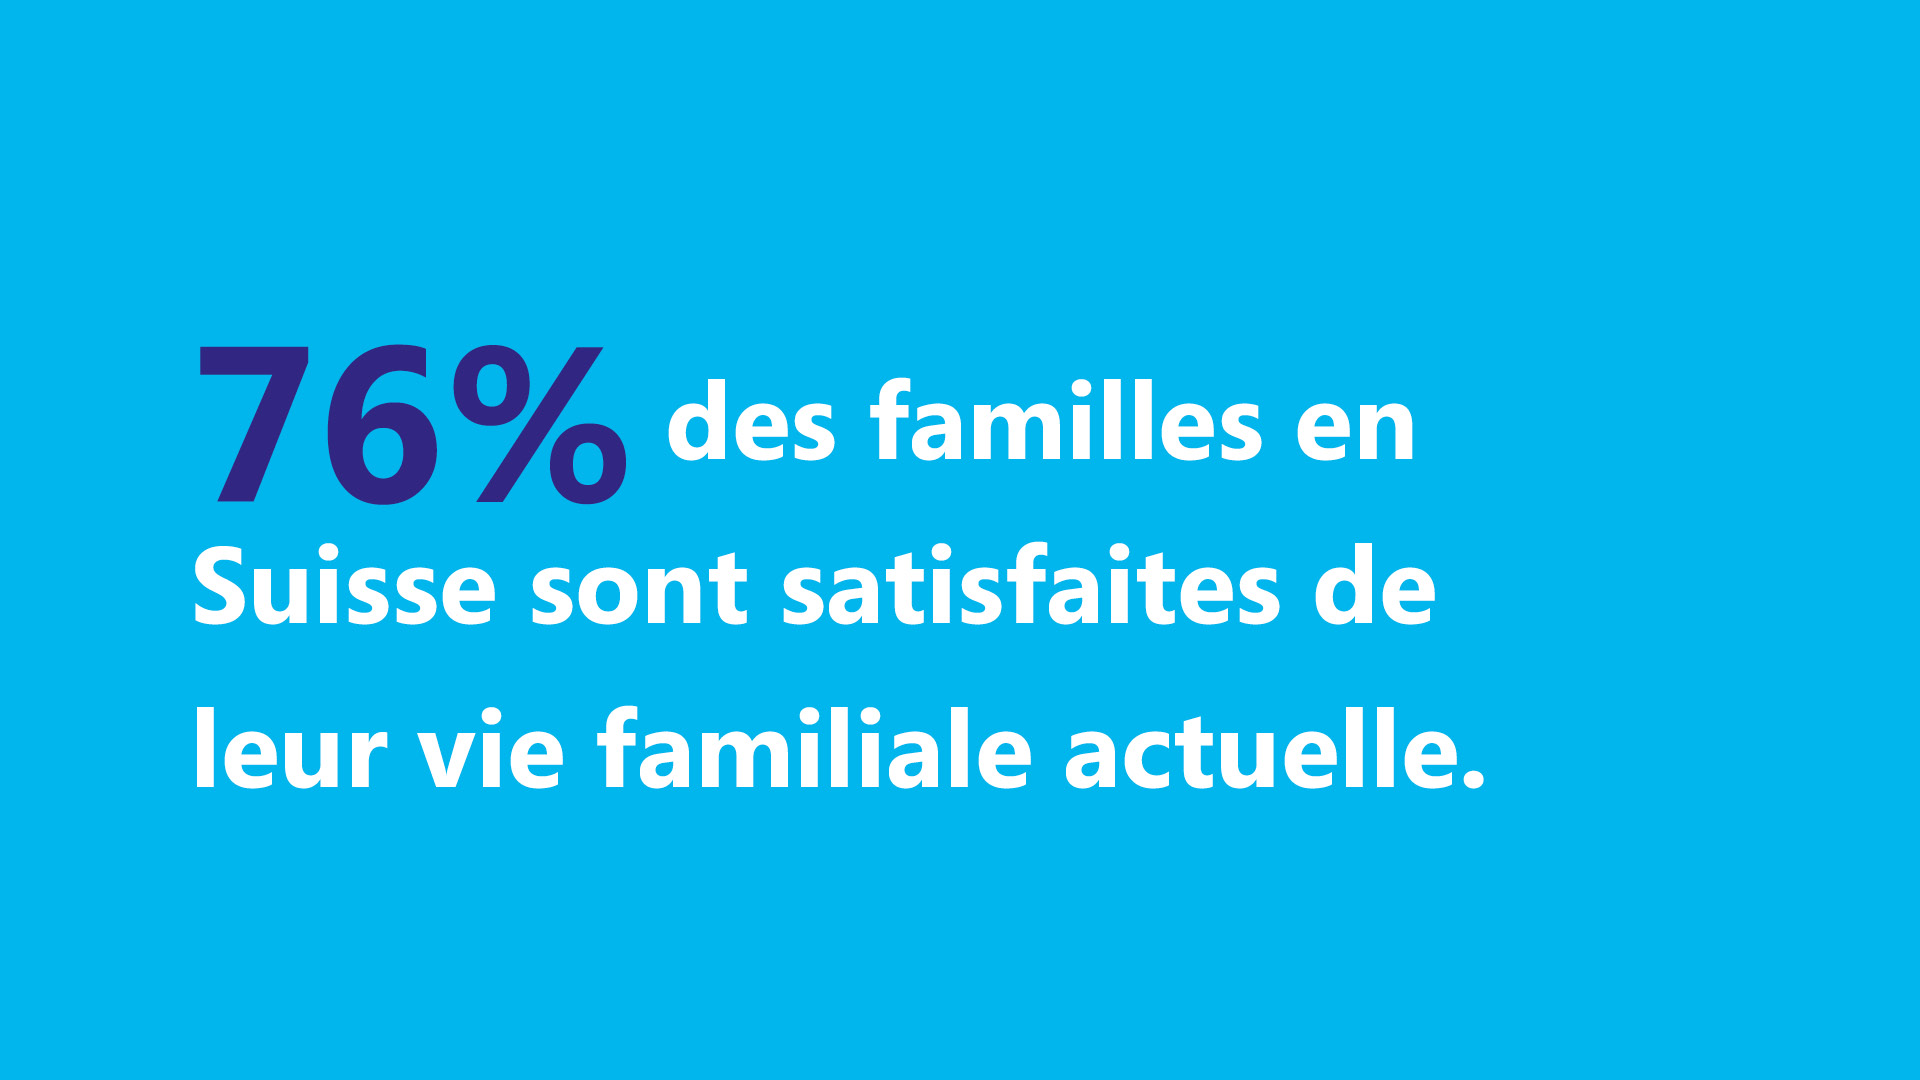 76% des familles en Suisse sont satisfaites de leur vie familiale actuelle